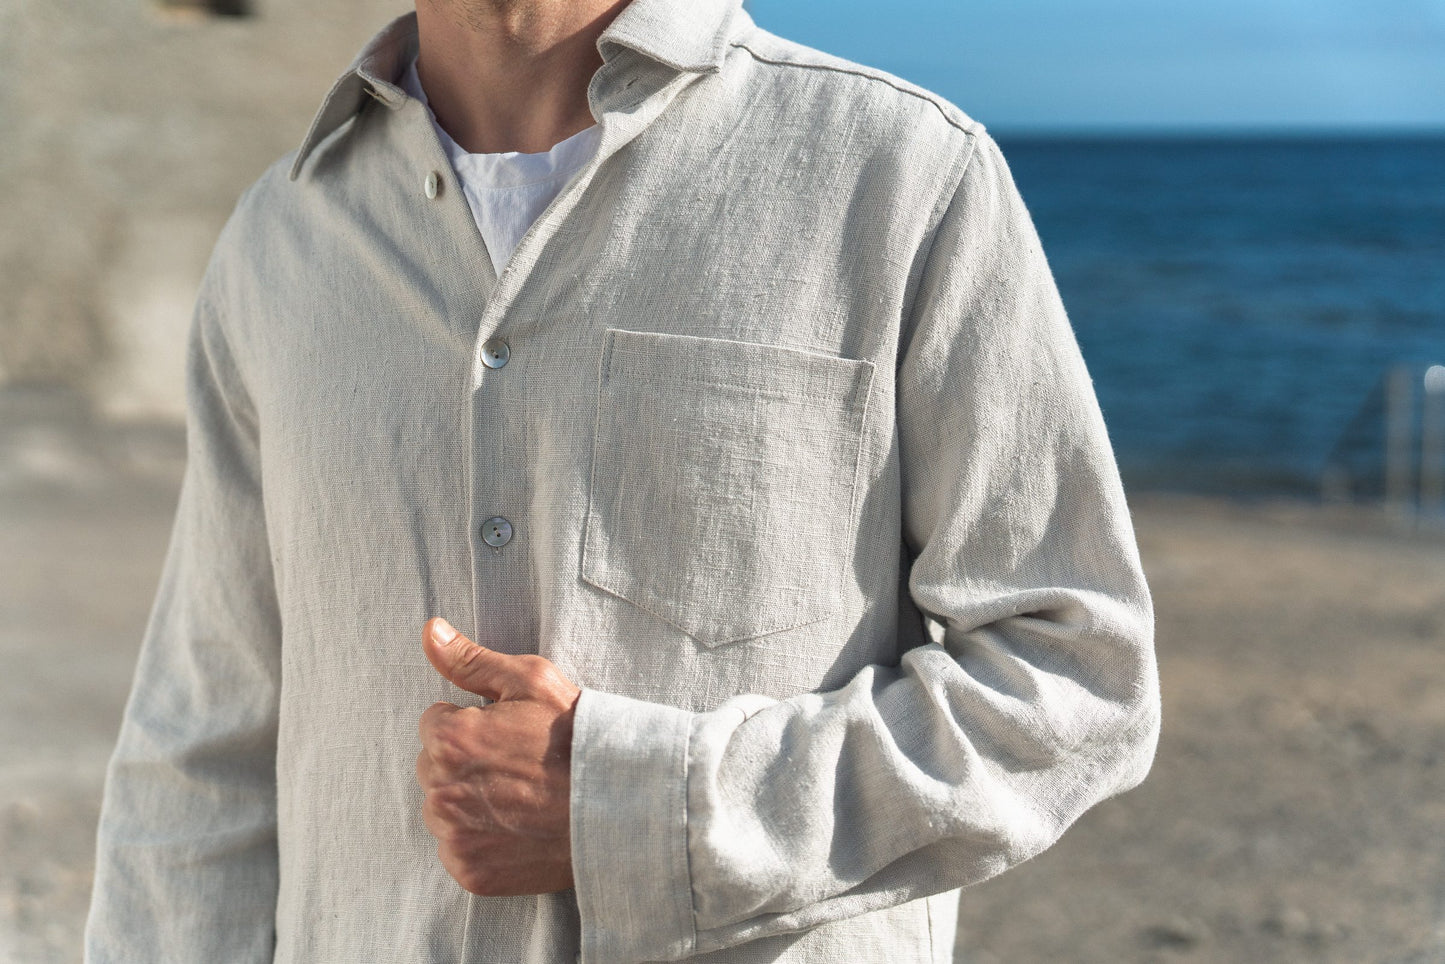 Thick linen: Long-Sleeve Classic Linen Shirt / Summer Jacket for Men